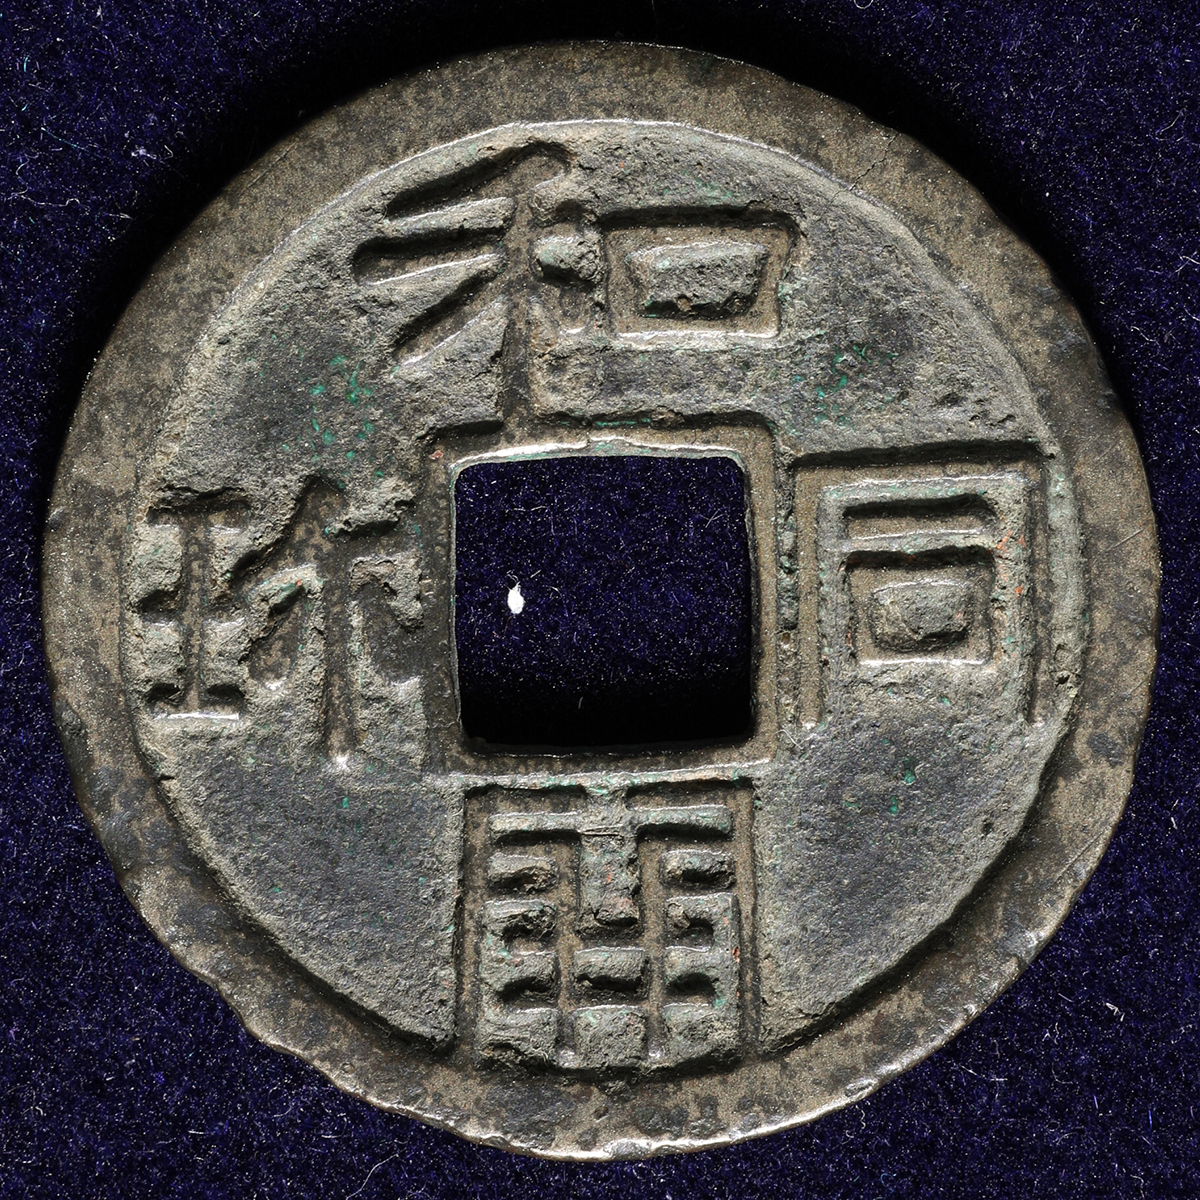 和同銅銭 和同開珎 深字深背 皇朝銭 本邦十二銭 日本最初の流通貨幣 母 